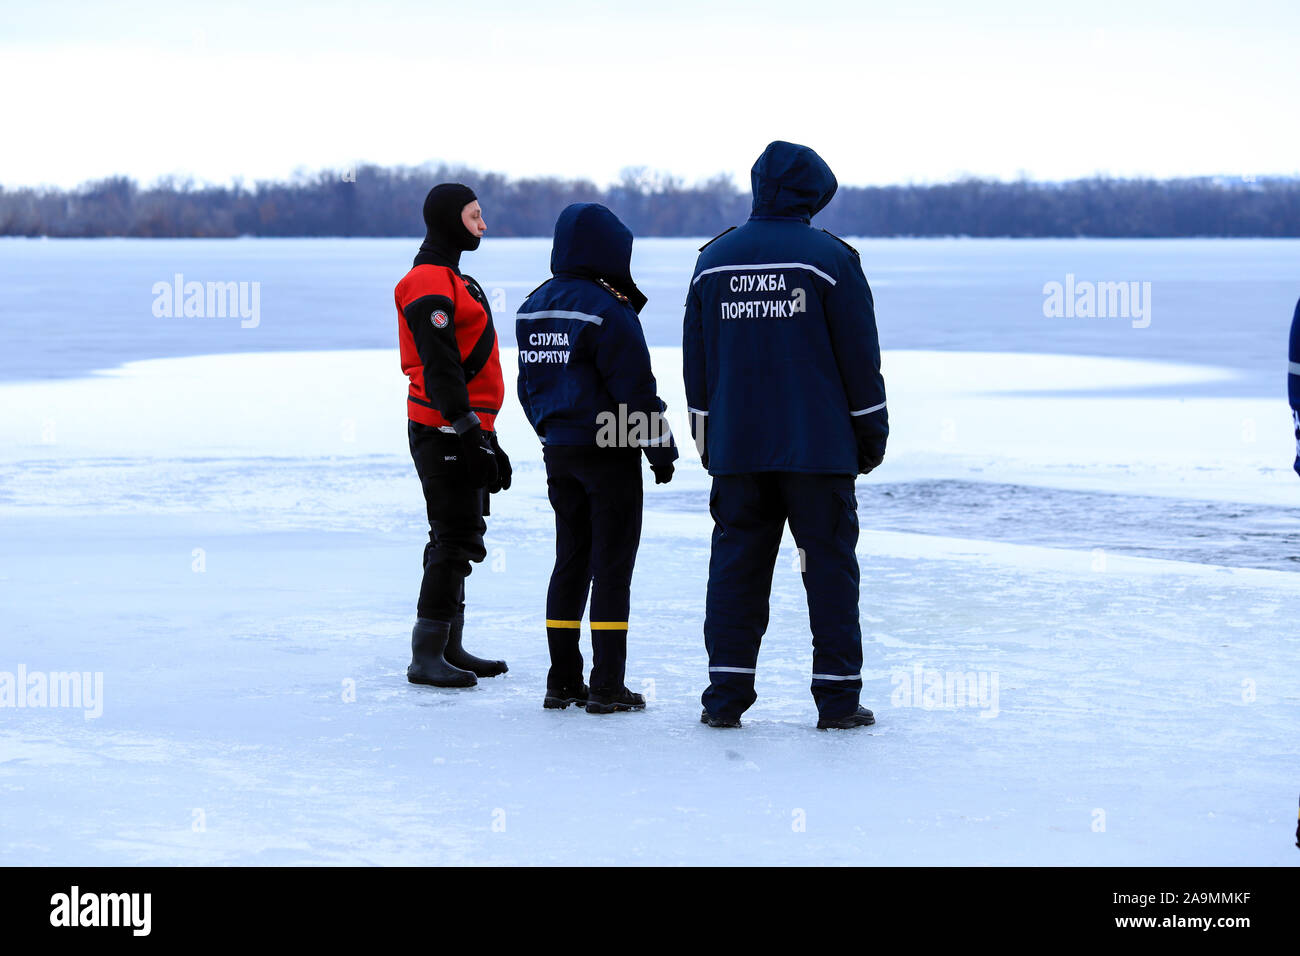 Dnipro city, Ucraina,19.01 2019.i soccorritori in uniforme e muta sono in servizio sul fiume congelato durante l'inverno la pesca e gli eventi sportivi. Salvataggio Foto Stock